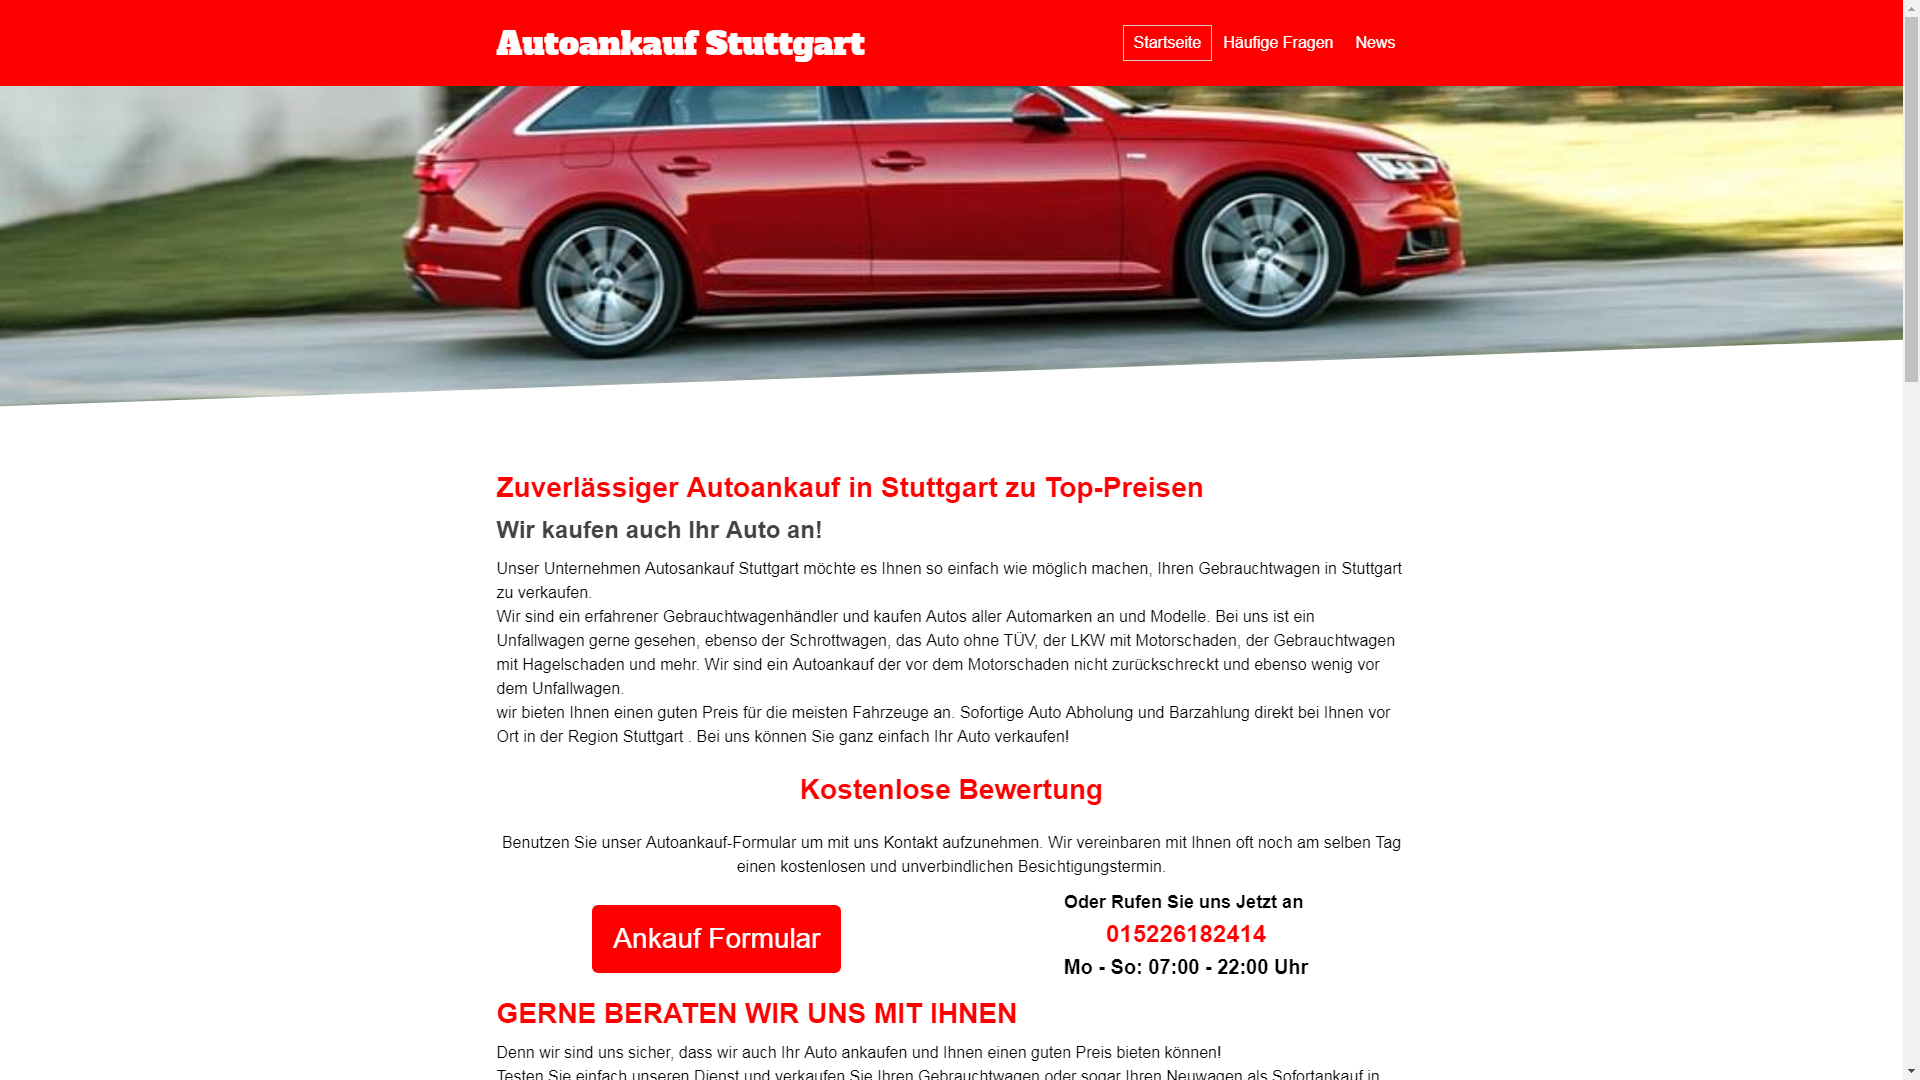 Autoankauf Stuttgart-Auto verkaufen in Stuttgart-jede Marke-schnelle Abwicklung